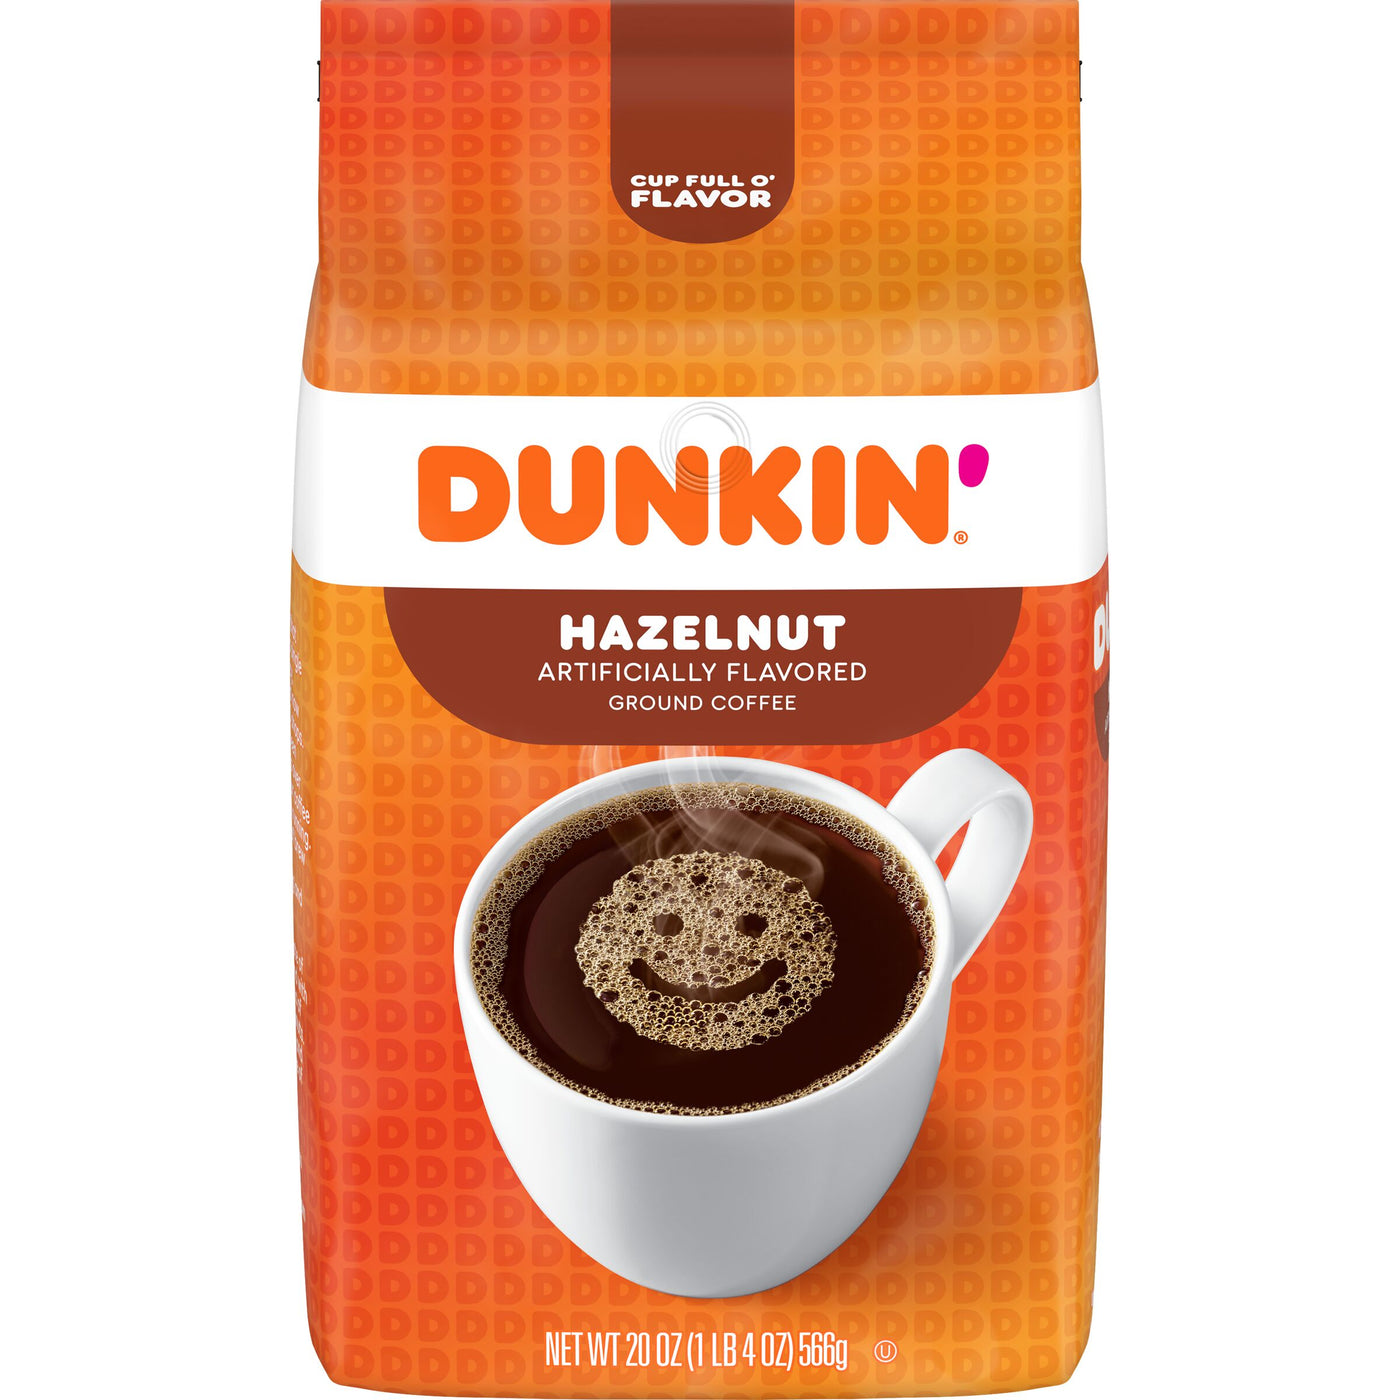 Dunkin' Hazelnut Flavored Ground Coffee